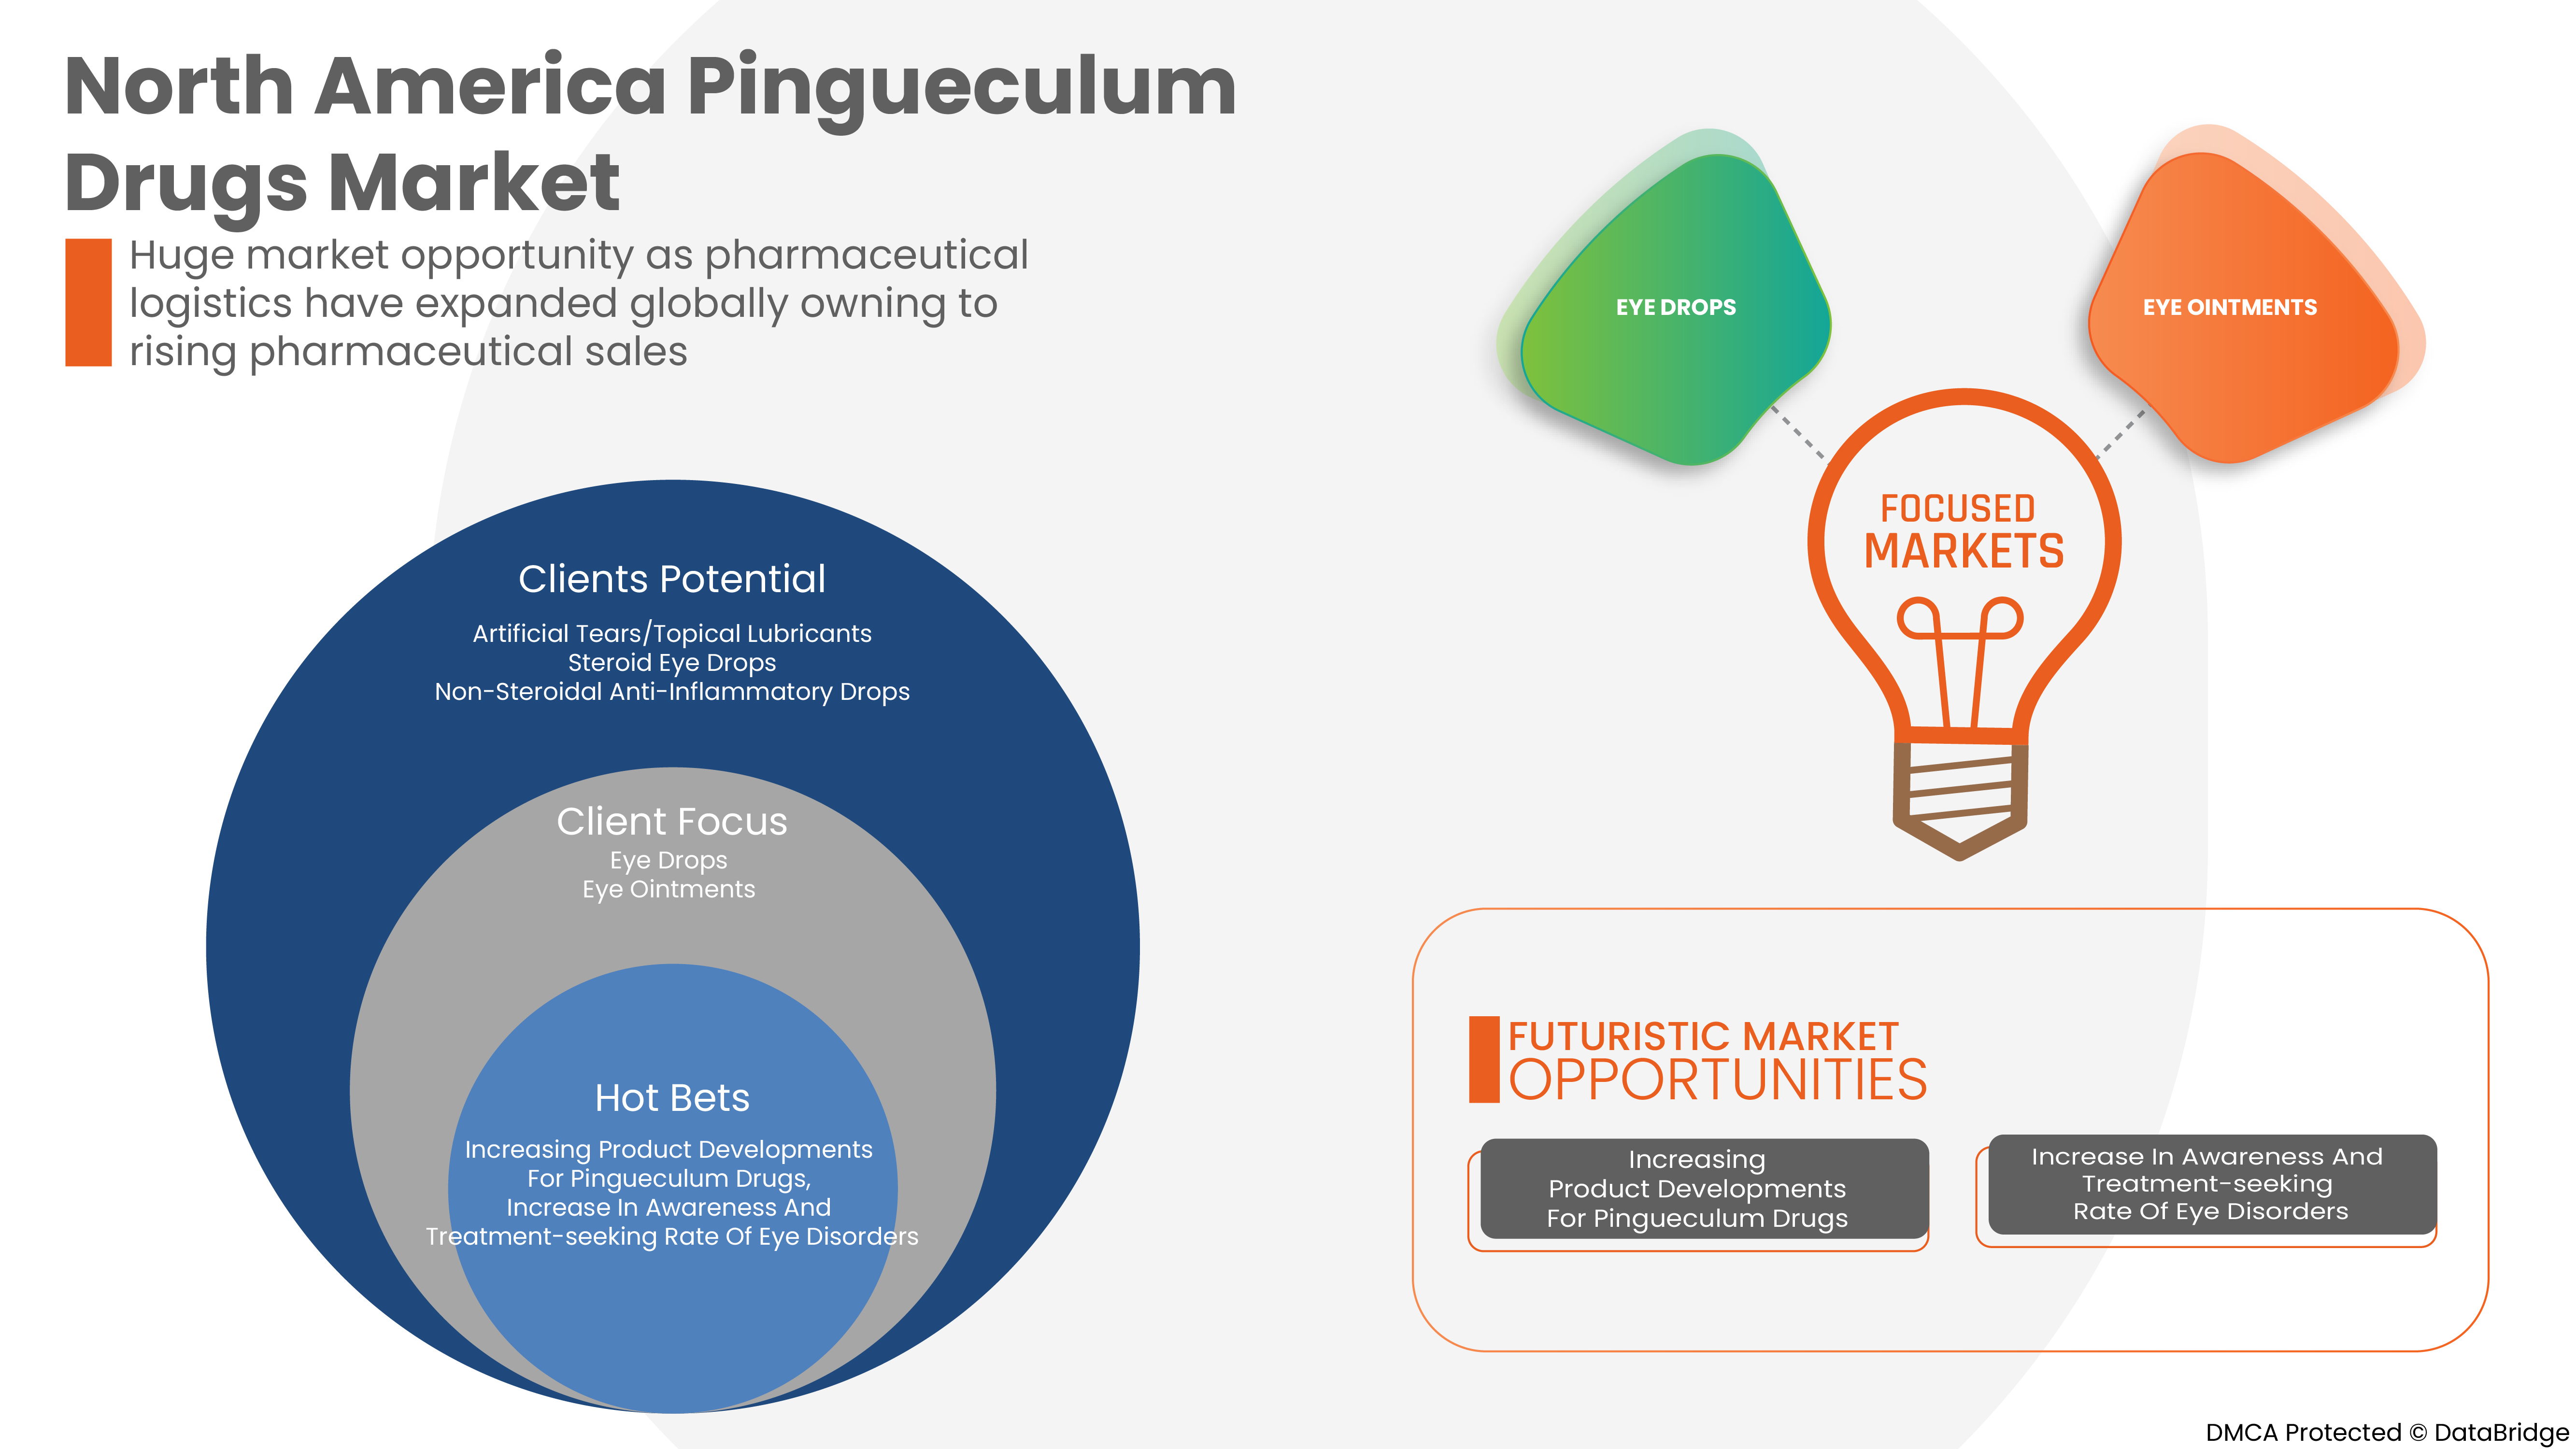 North America Pingueculum Drugs Market